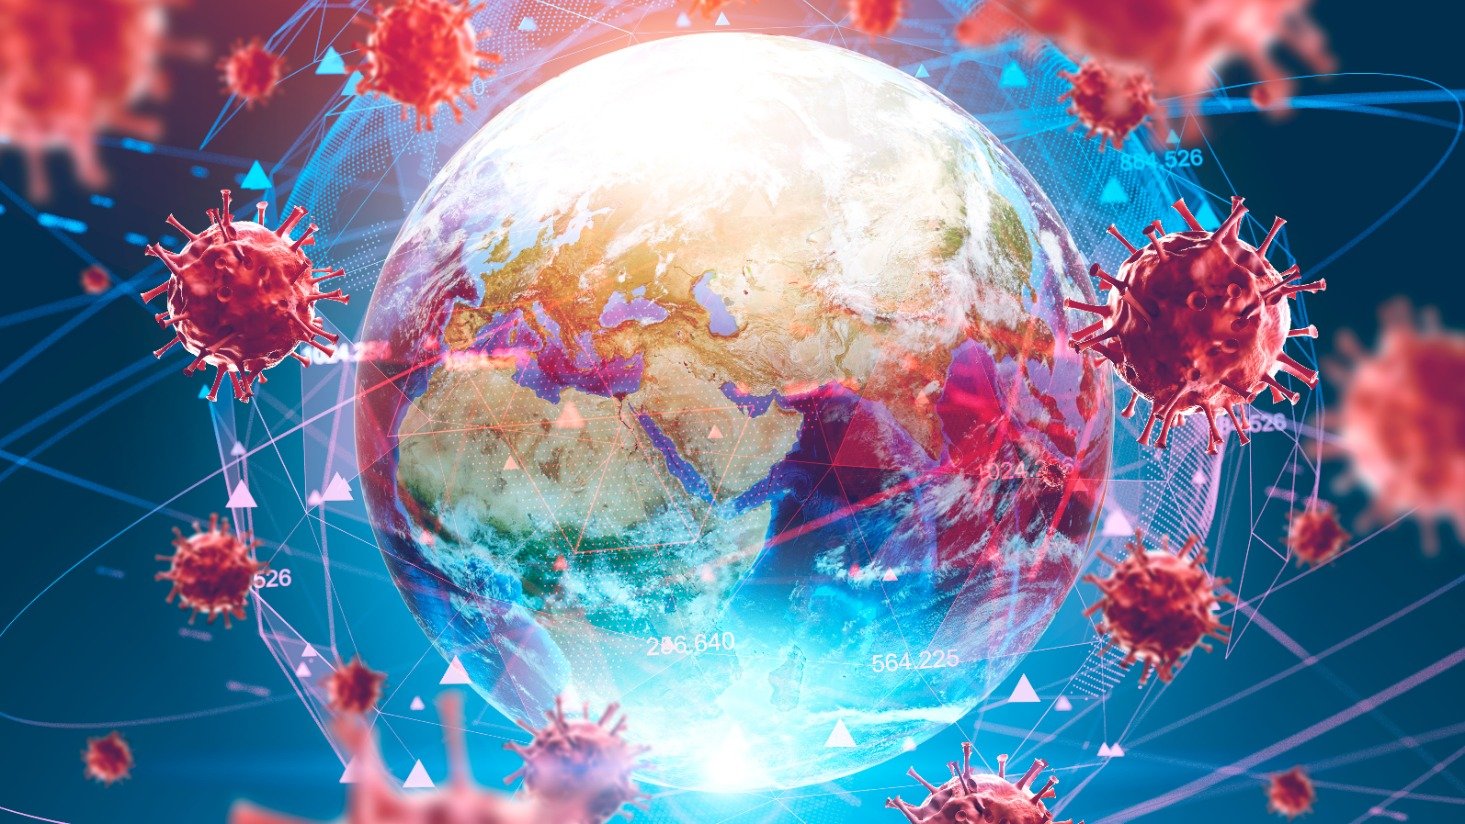 Coronavirus, the global supply chain, and lighting